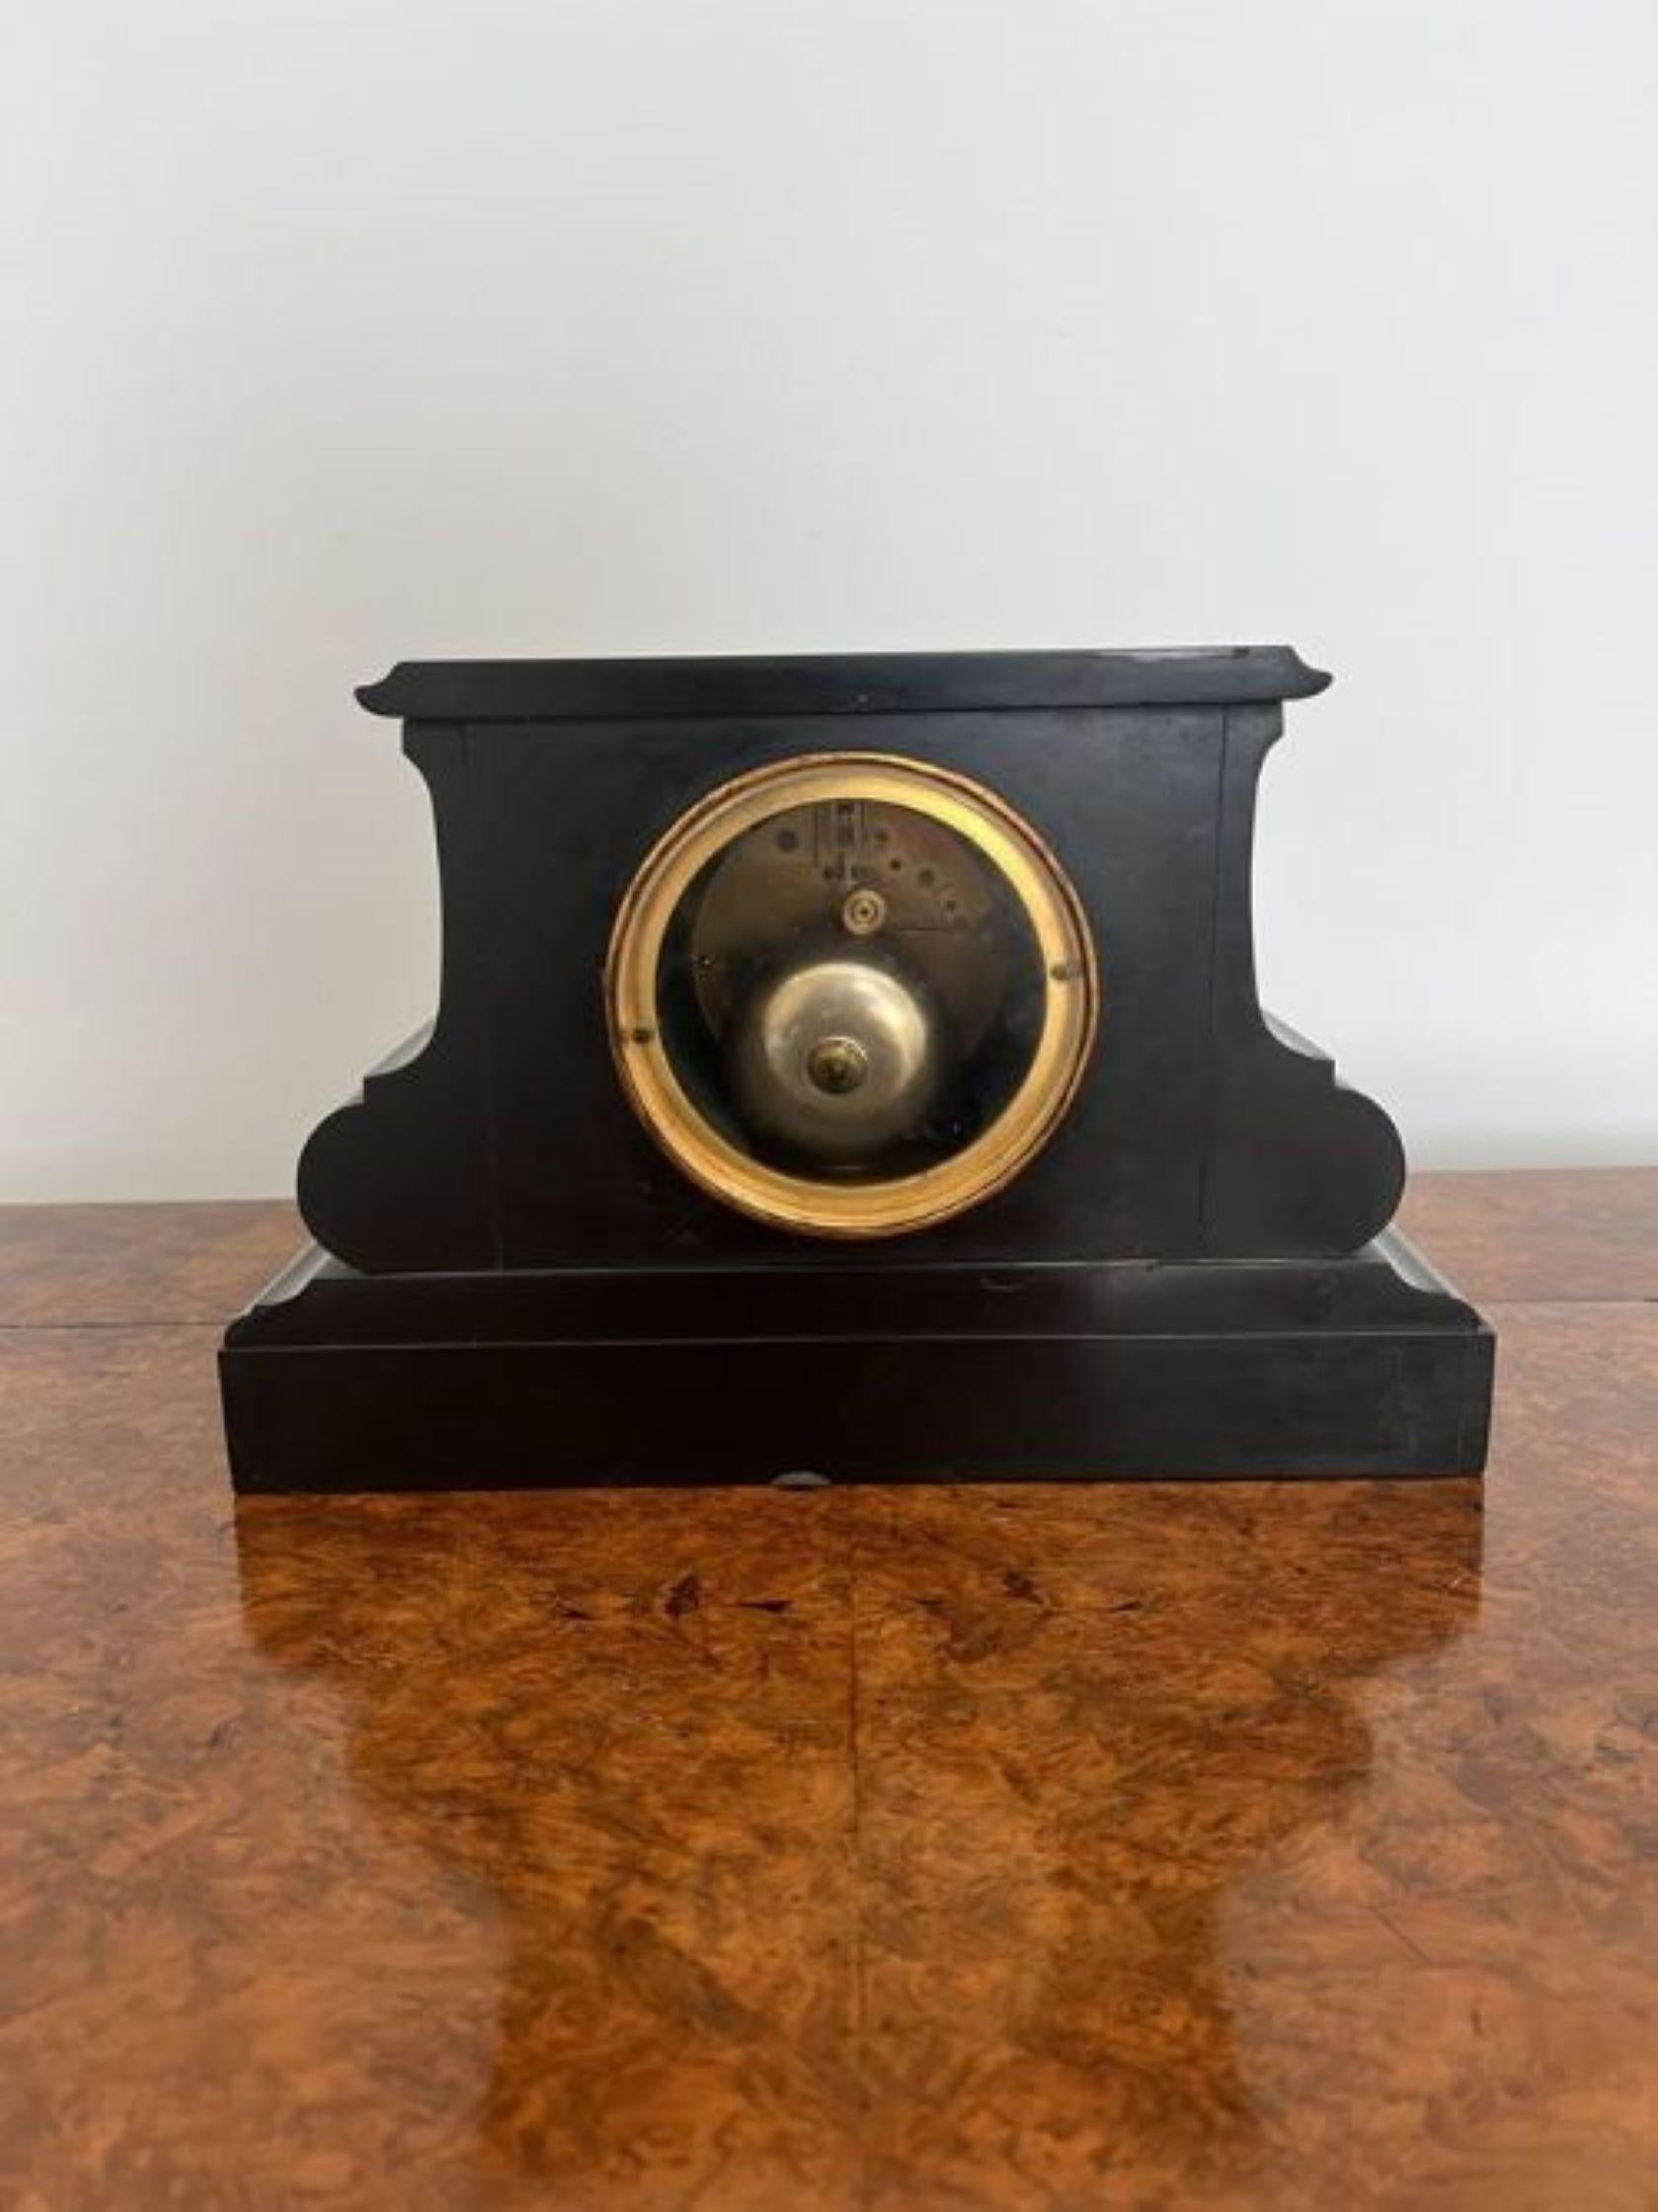 Qualität antiken viktorianischen acht Tag Mantel Uhr mit einer Qualität antiken viktorianischen schwarzem Marmor geformt acht Tag Mantel Uhr mit einem schwarzen Zifferblatt und goldenen Ziffern, eine Messing-Lünette und Goldzeiger, mit einem acht